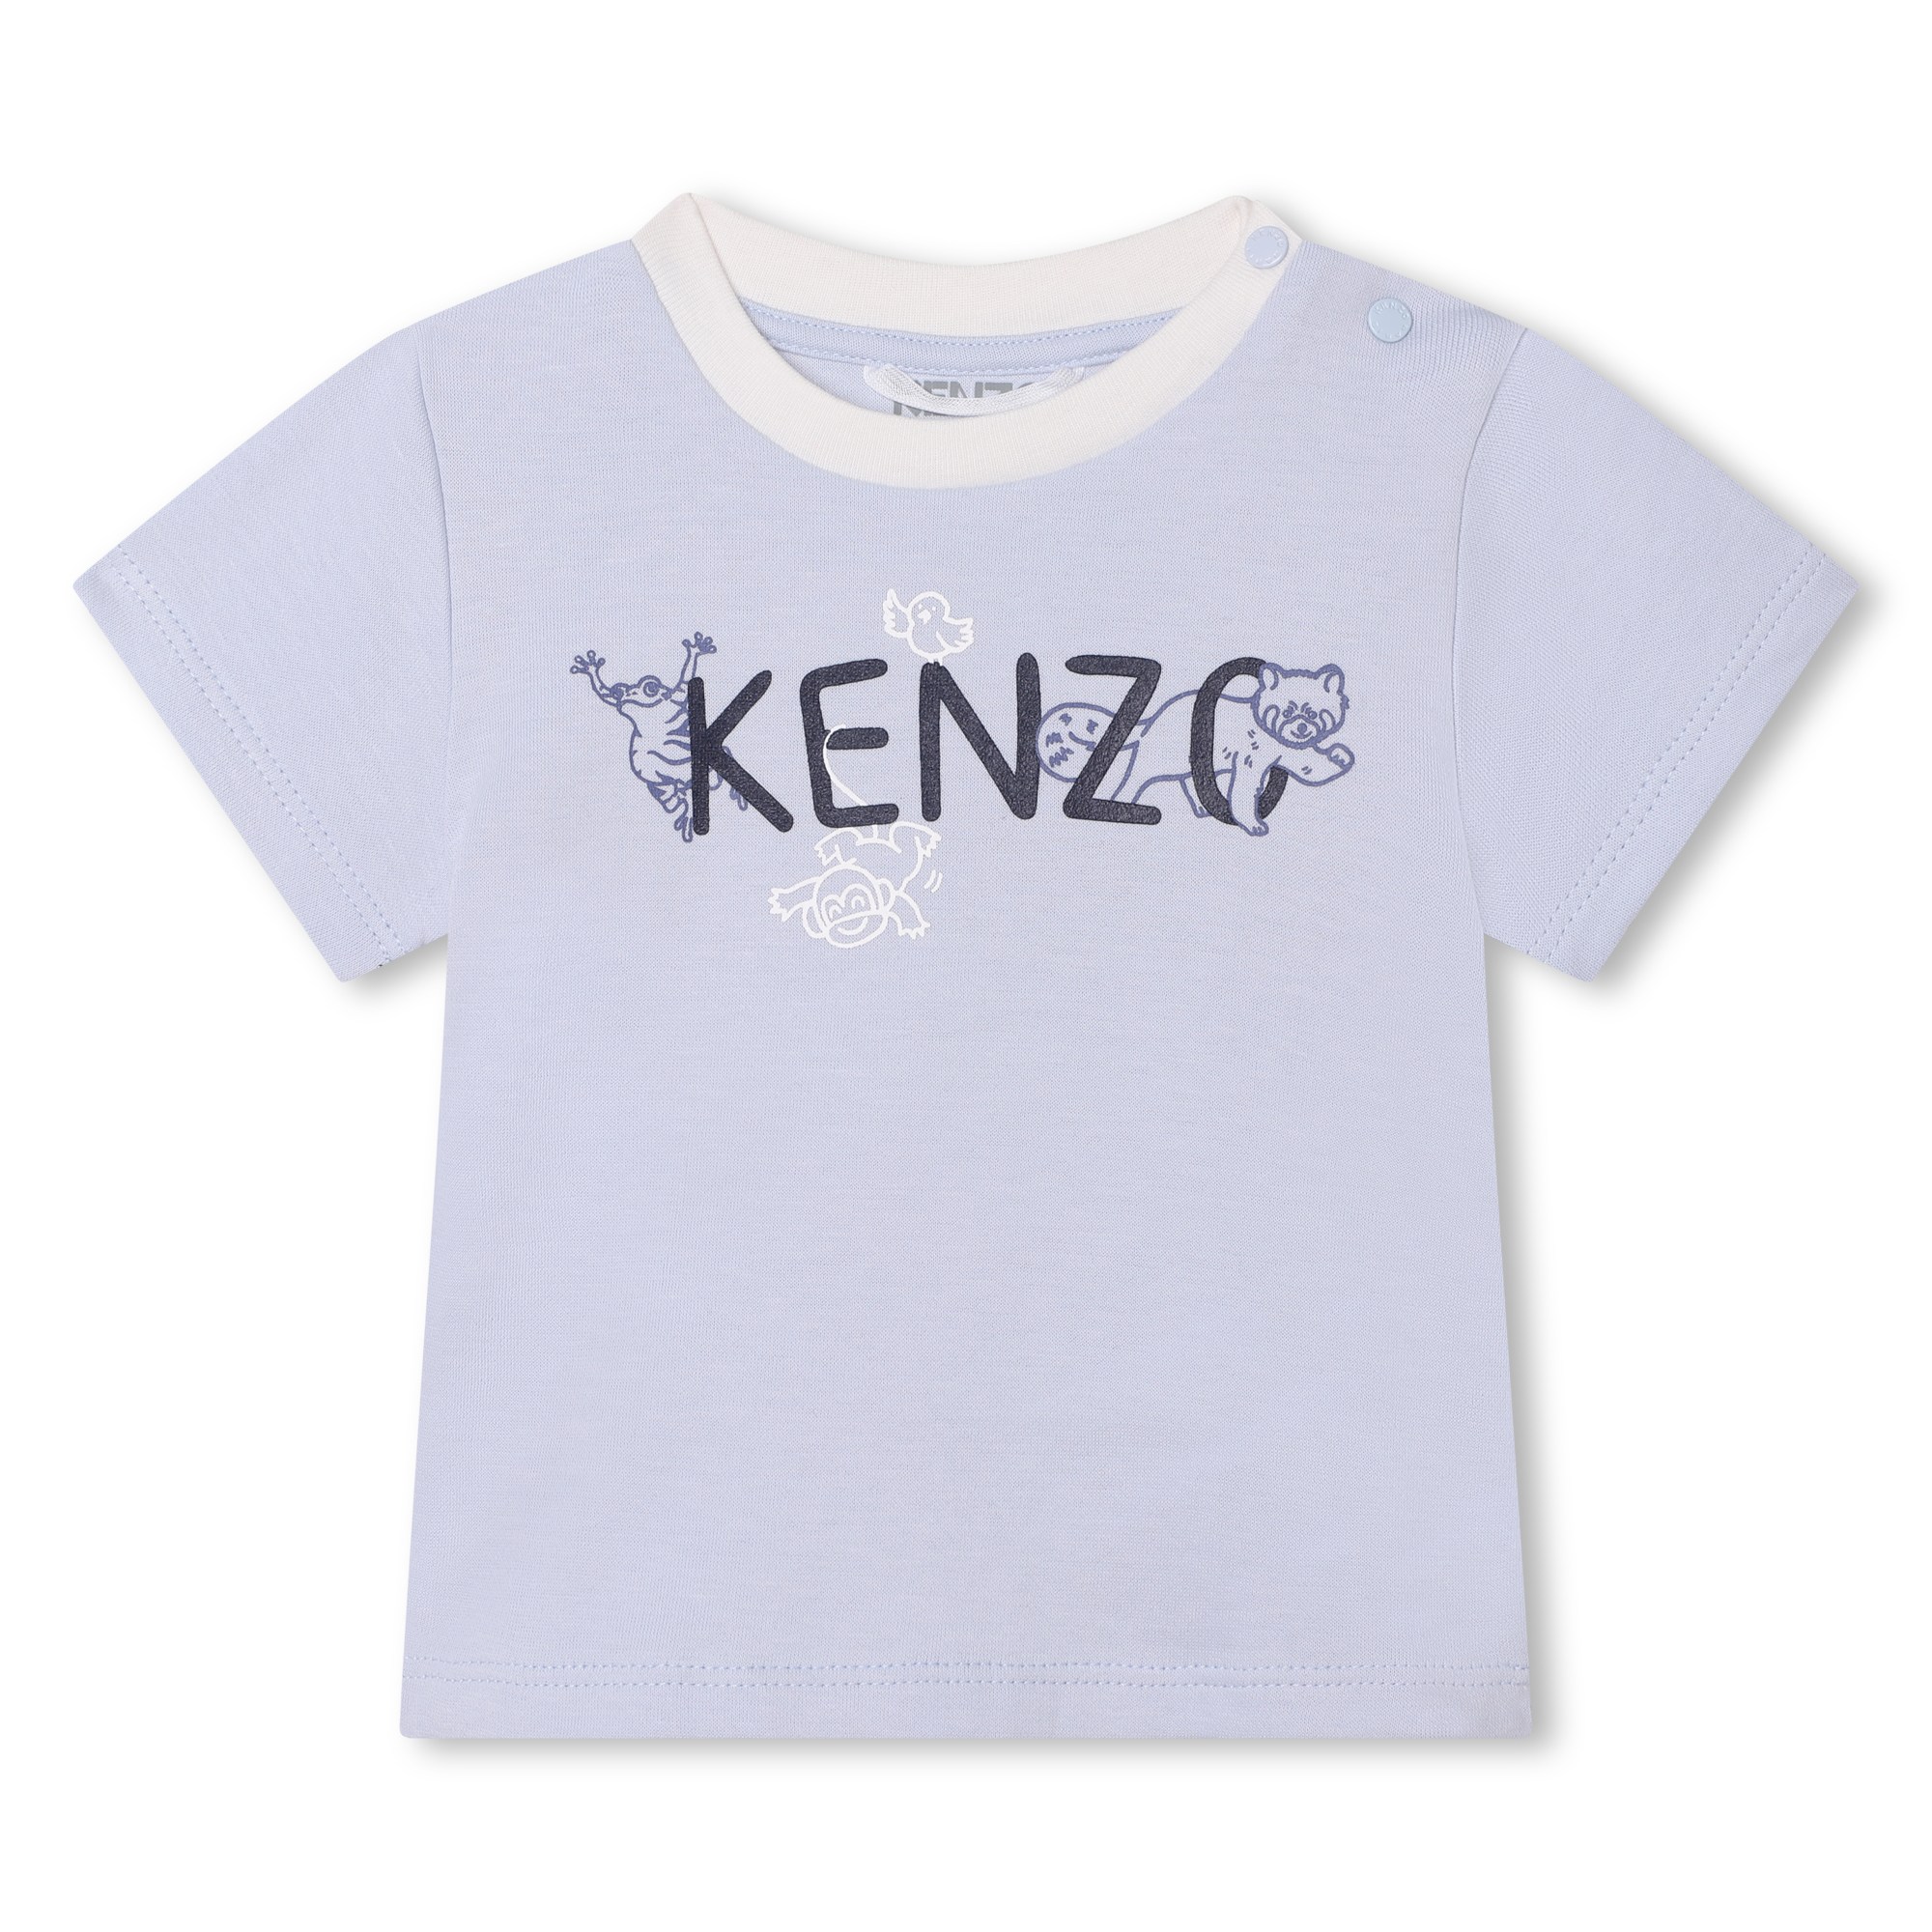 Setje t-shirt + broek KENZO KIDS Voor